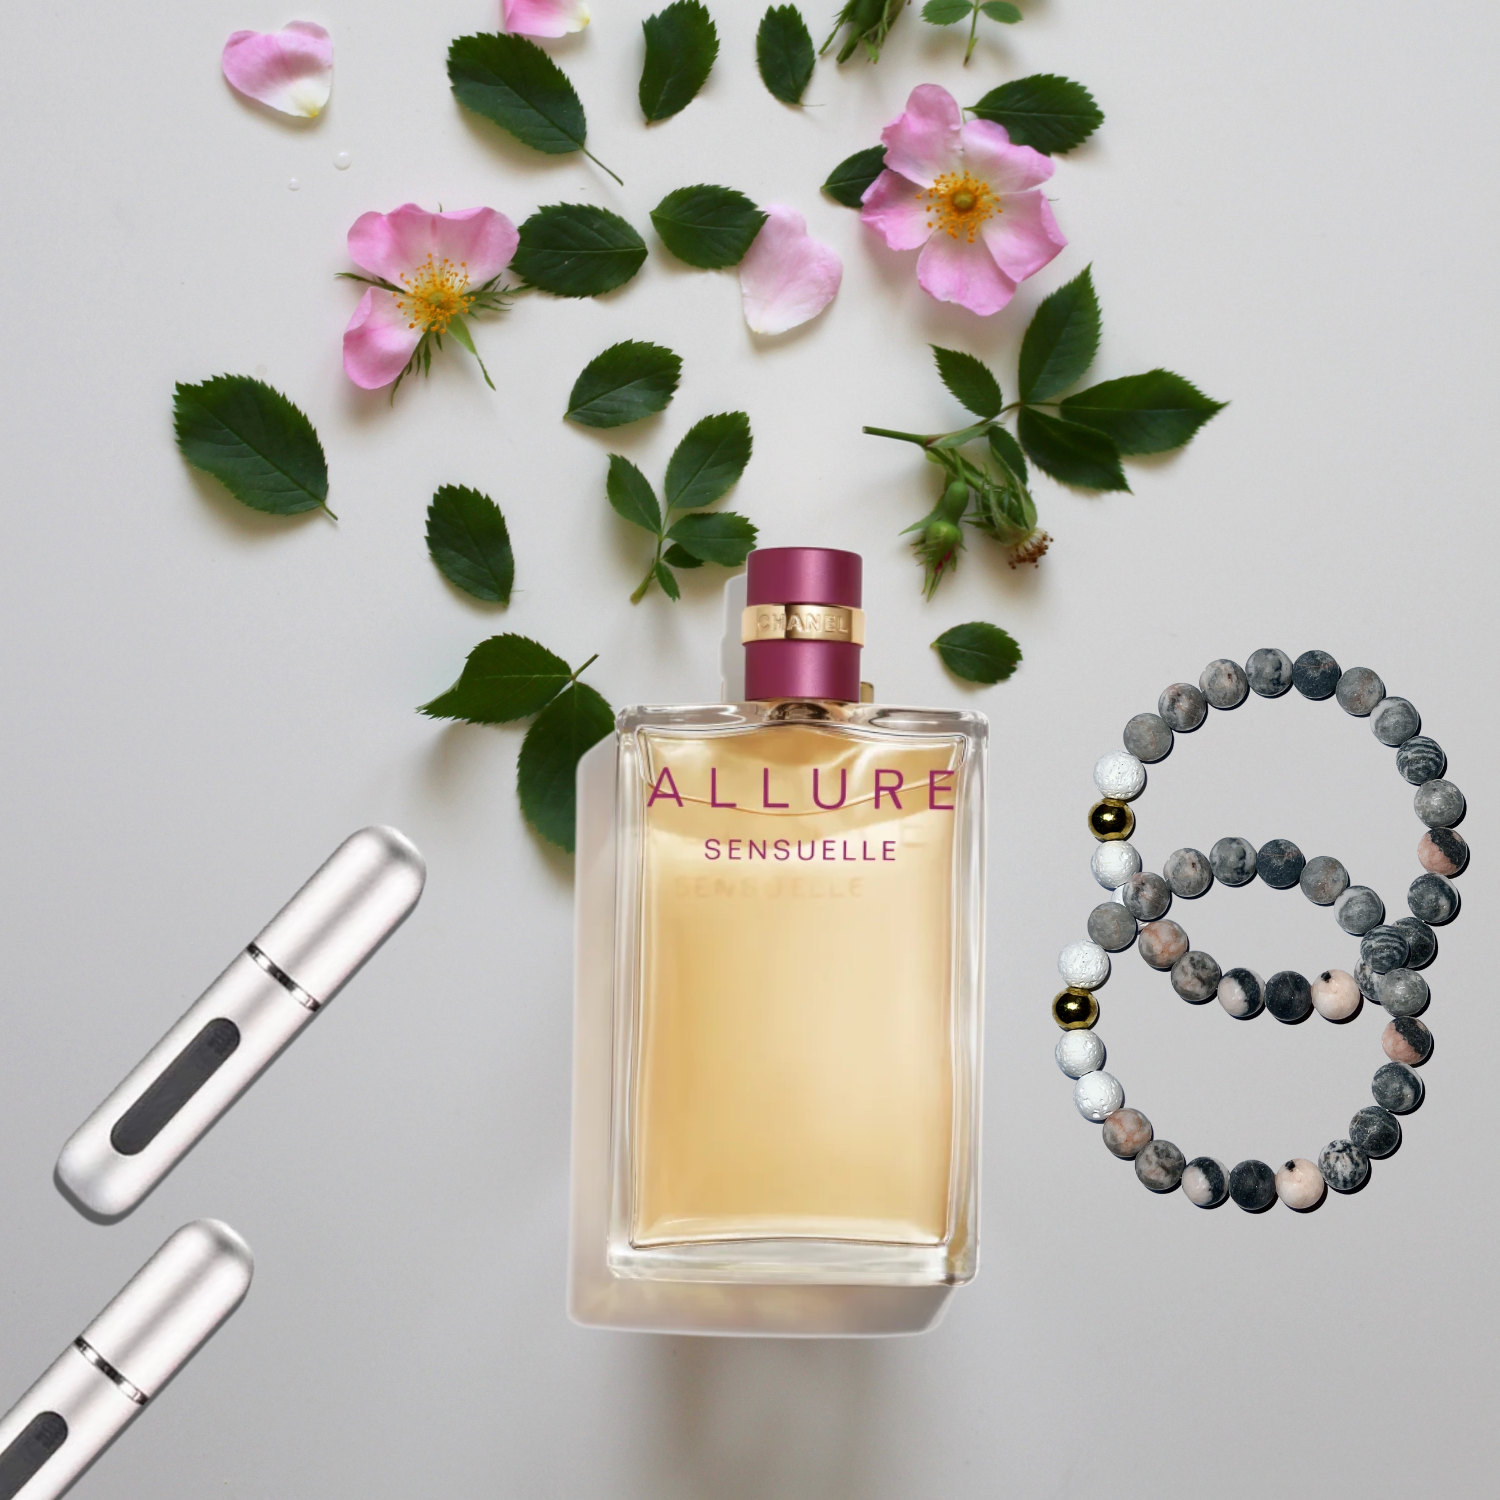 Chanel Allure Sensuelle Eau de Parfum Vaporisateur Spray, 50 ml / 1.7 fl.  oz 